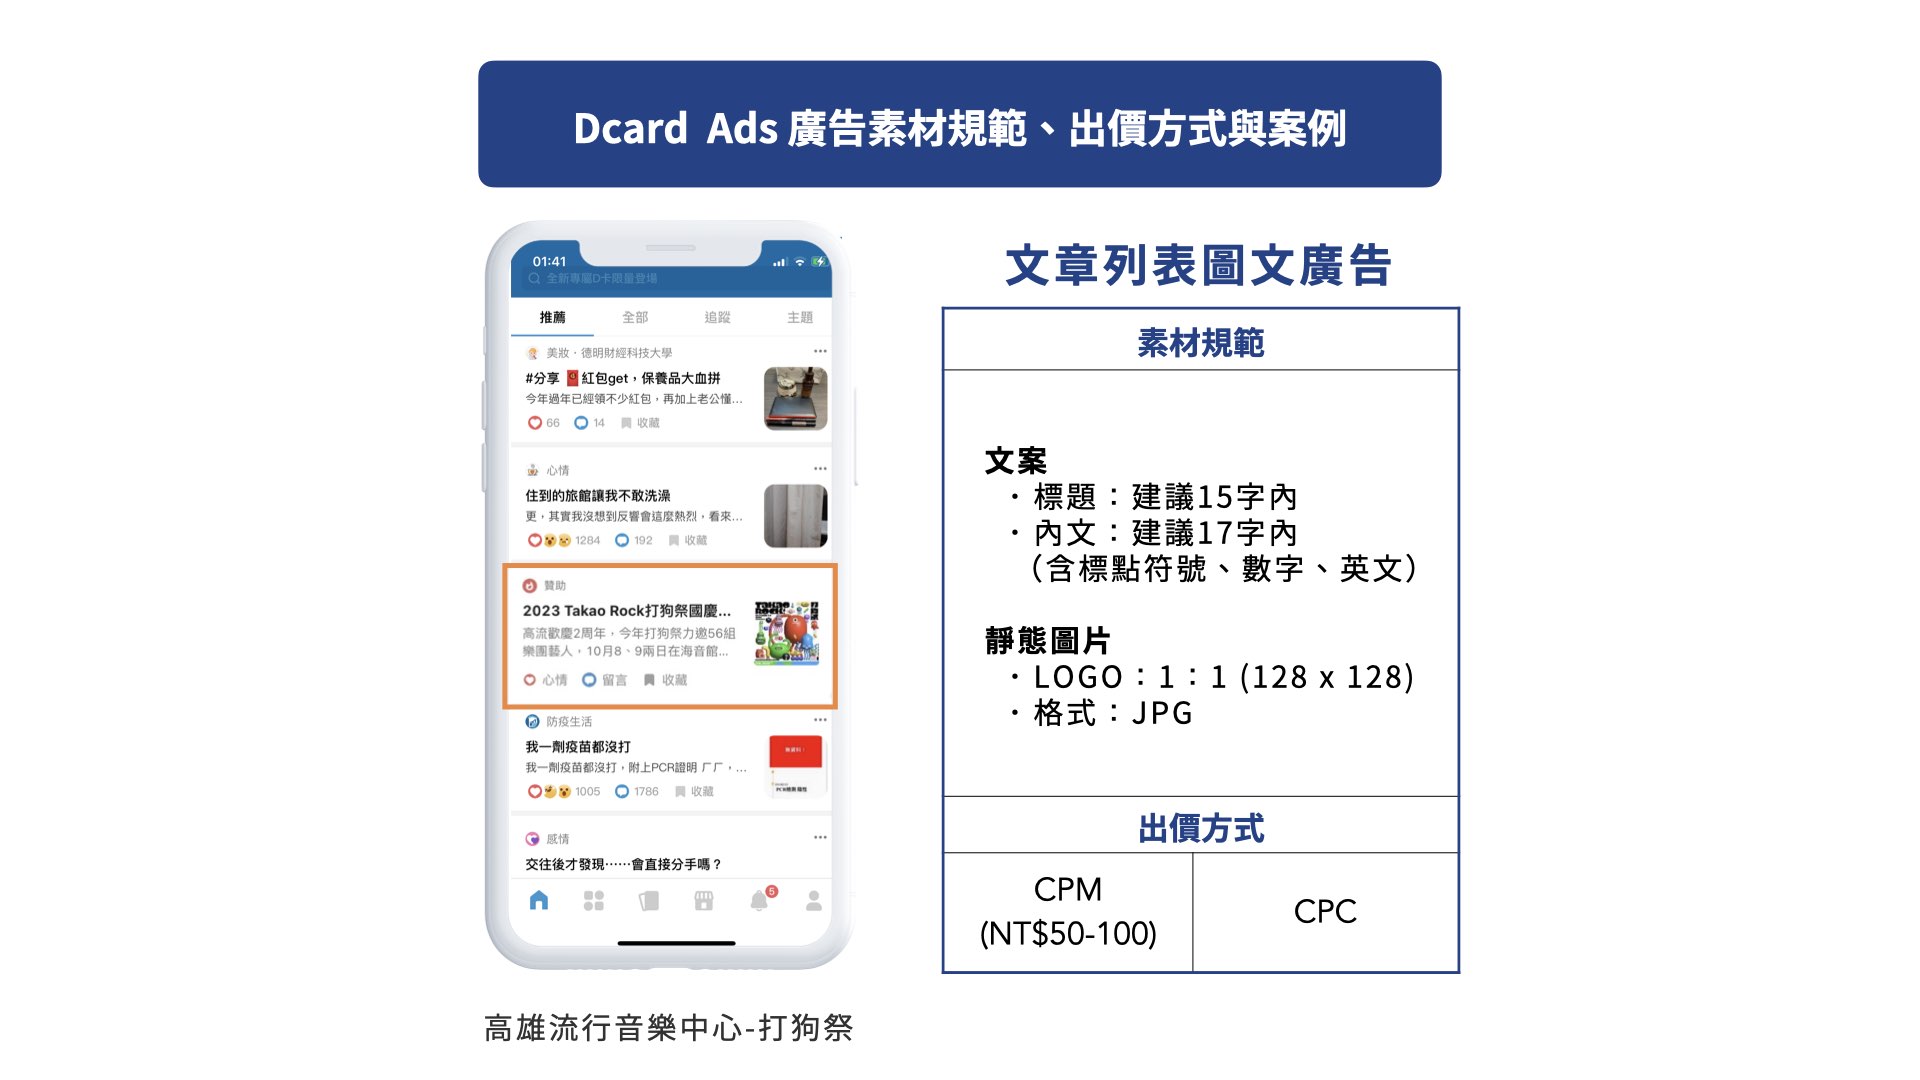 Dcard Ads 文章列表圖文廣告廣告素材規範、出價方式與高雄流行音樂中心：2023 Takao Rock 打狗祭廣告案例